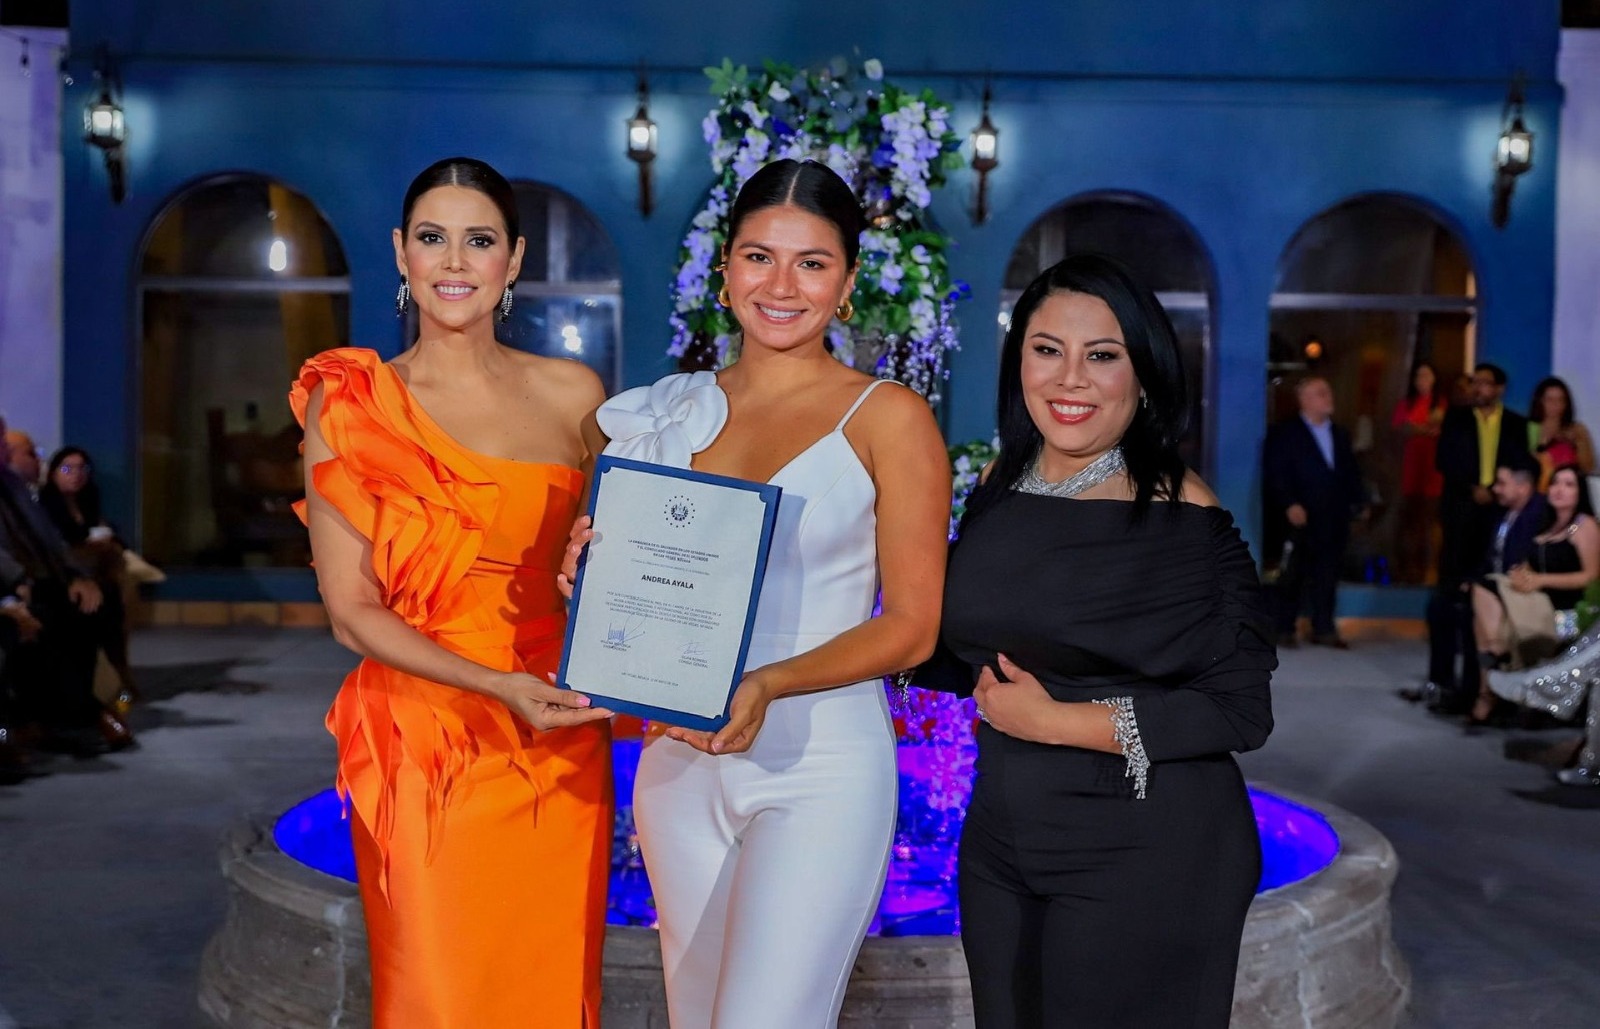 Salvadoran Fashion Show held in Las Vegas